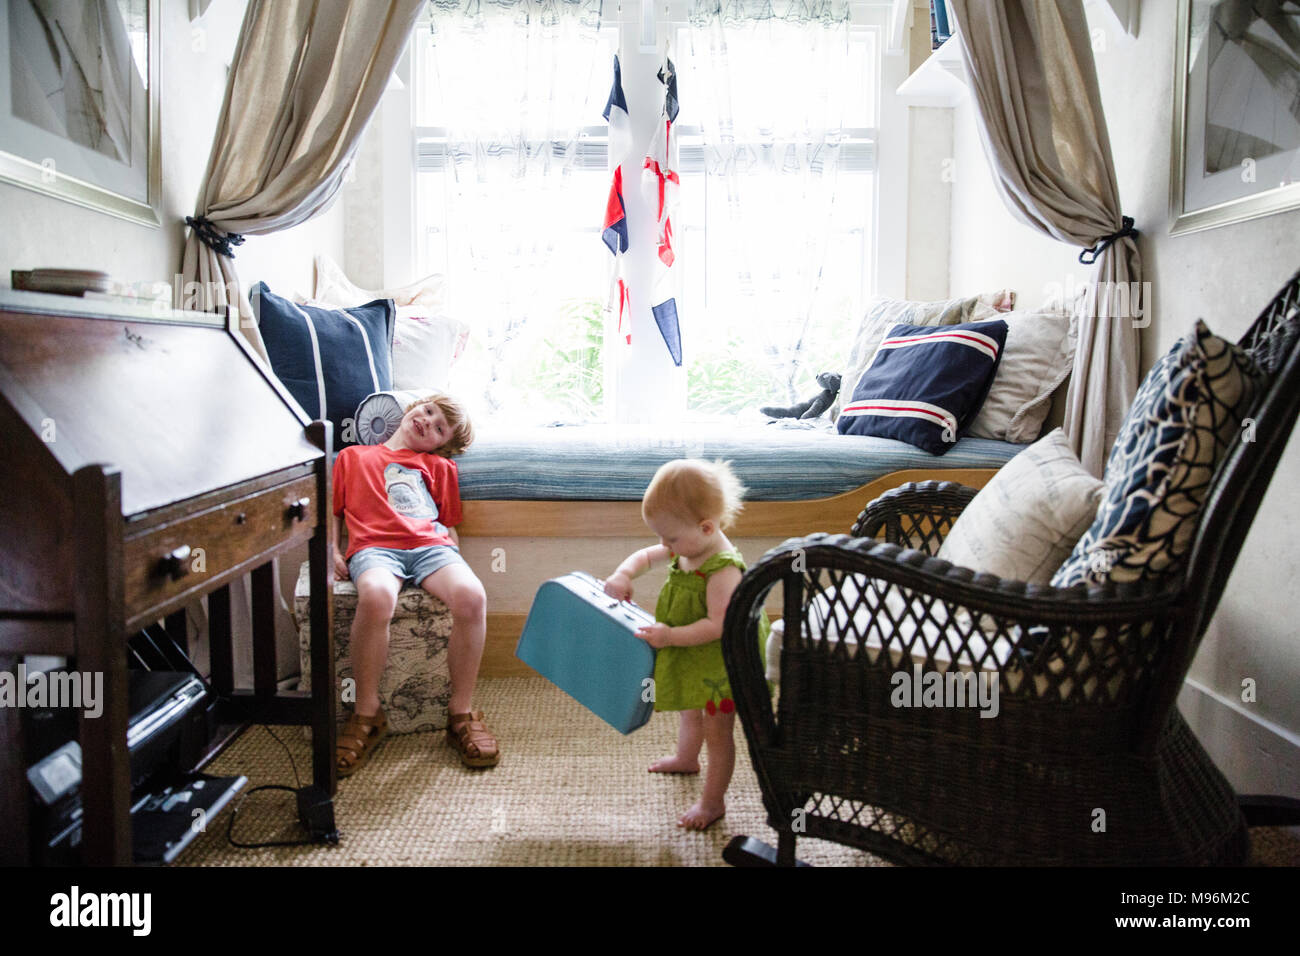 Niño y bebé en dormitorio de náutico Fotografía de - Alamy